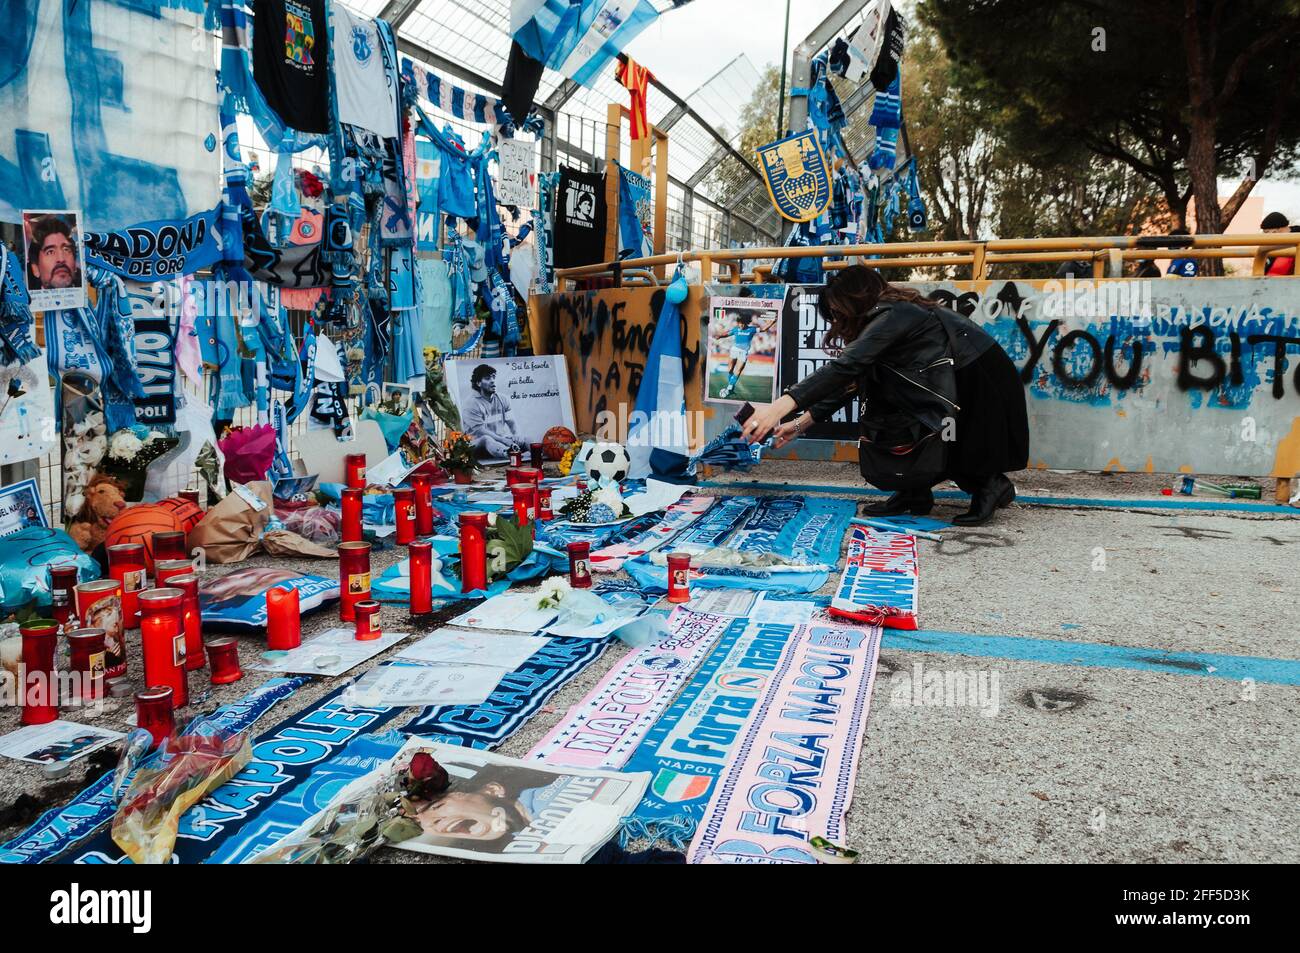 Maradona: Continua ad essere pianto e celebrato, osannato e portato in trionfo attraverso striscioni,cori,cartelli, lettere, disegni e gesti simbolici Stockfoto